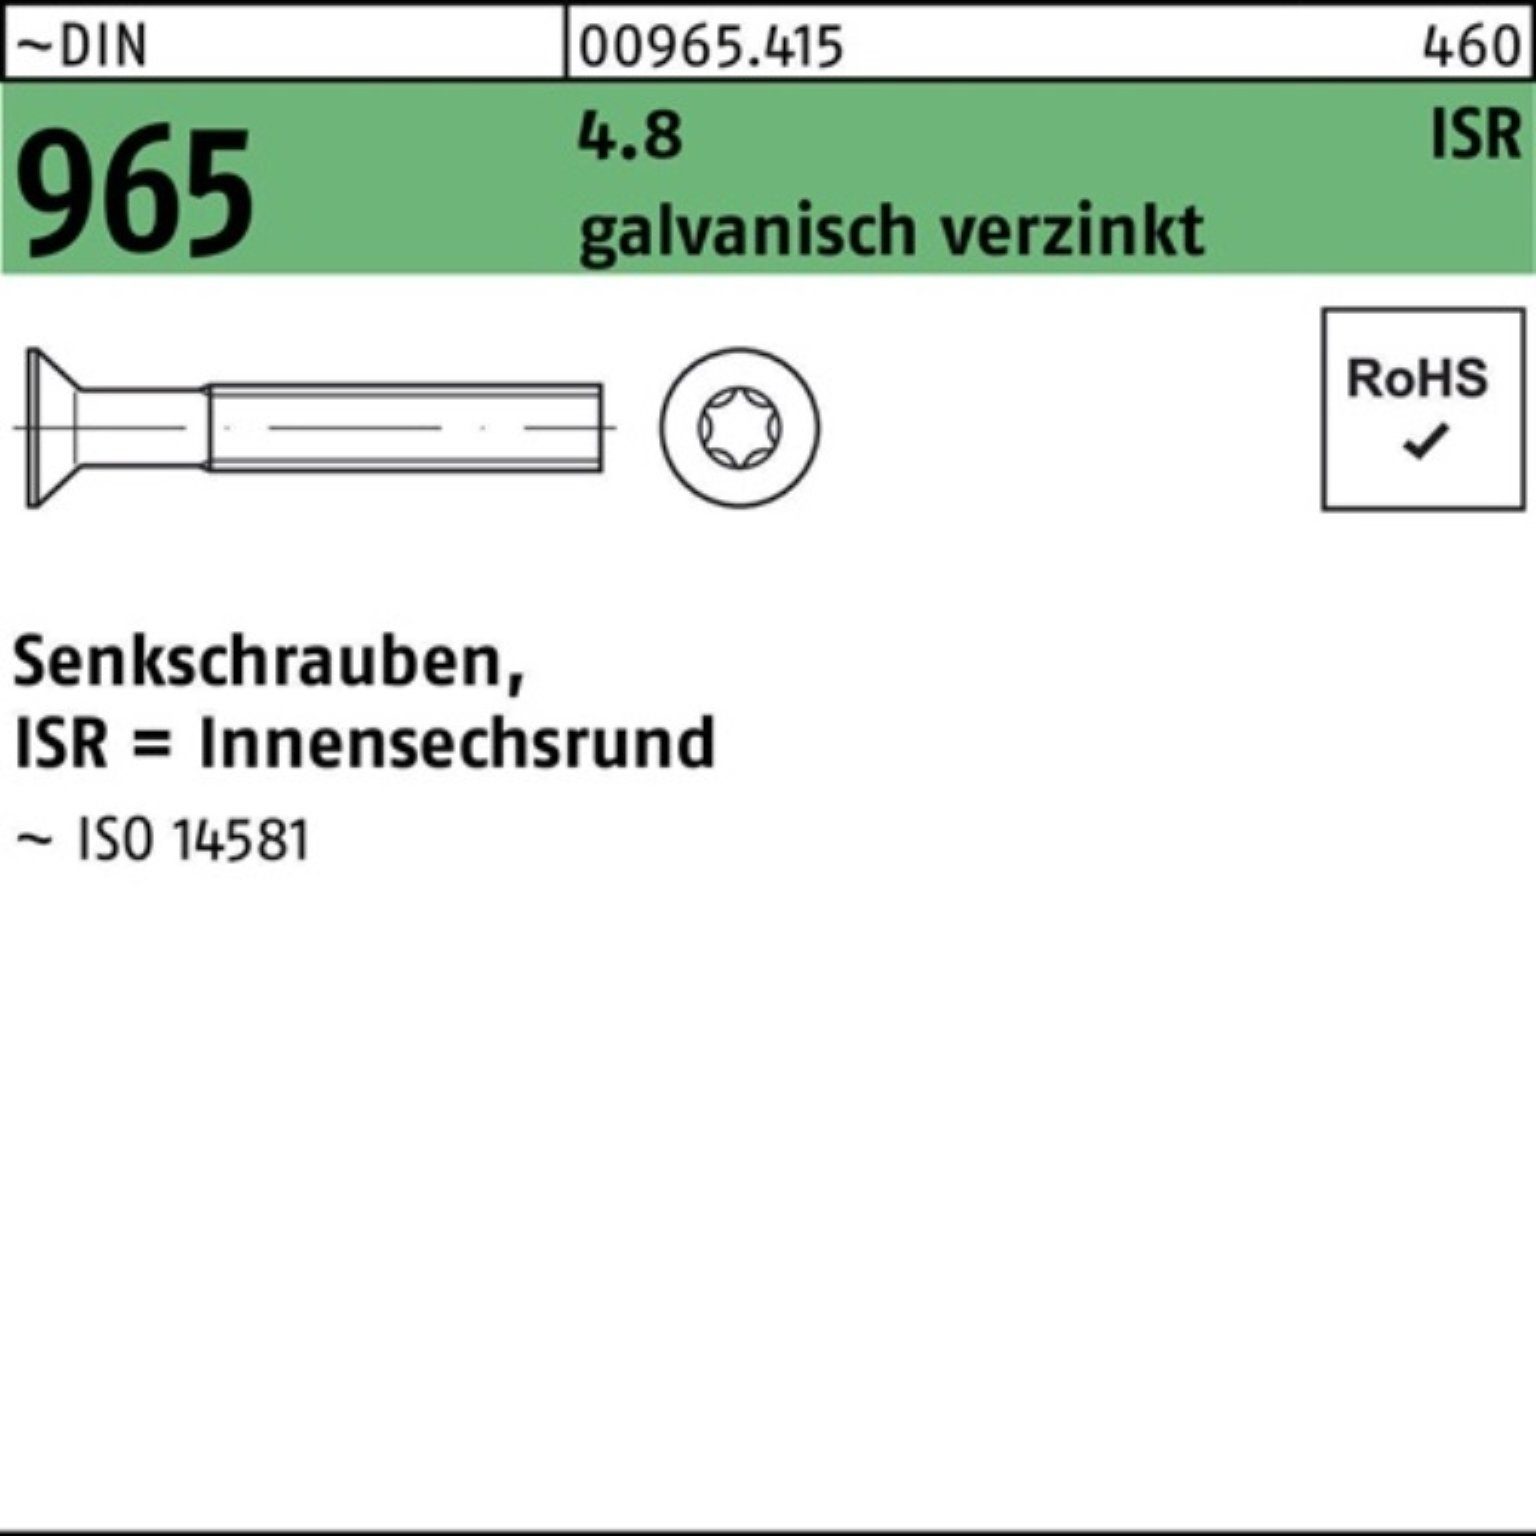 M5x16-T25 Senkschraube 1000St. galv.verz. Reyher 1000er ISR Senkschraube DIN Pack 965 4.8